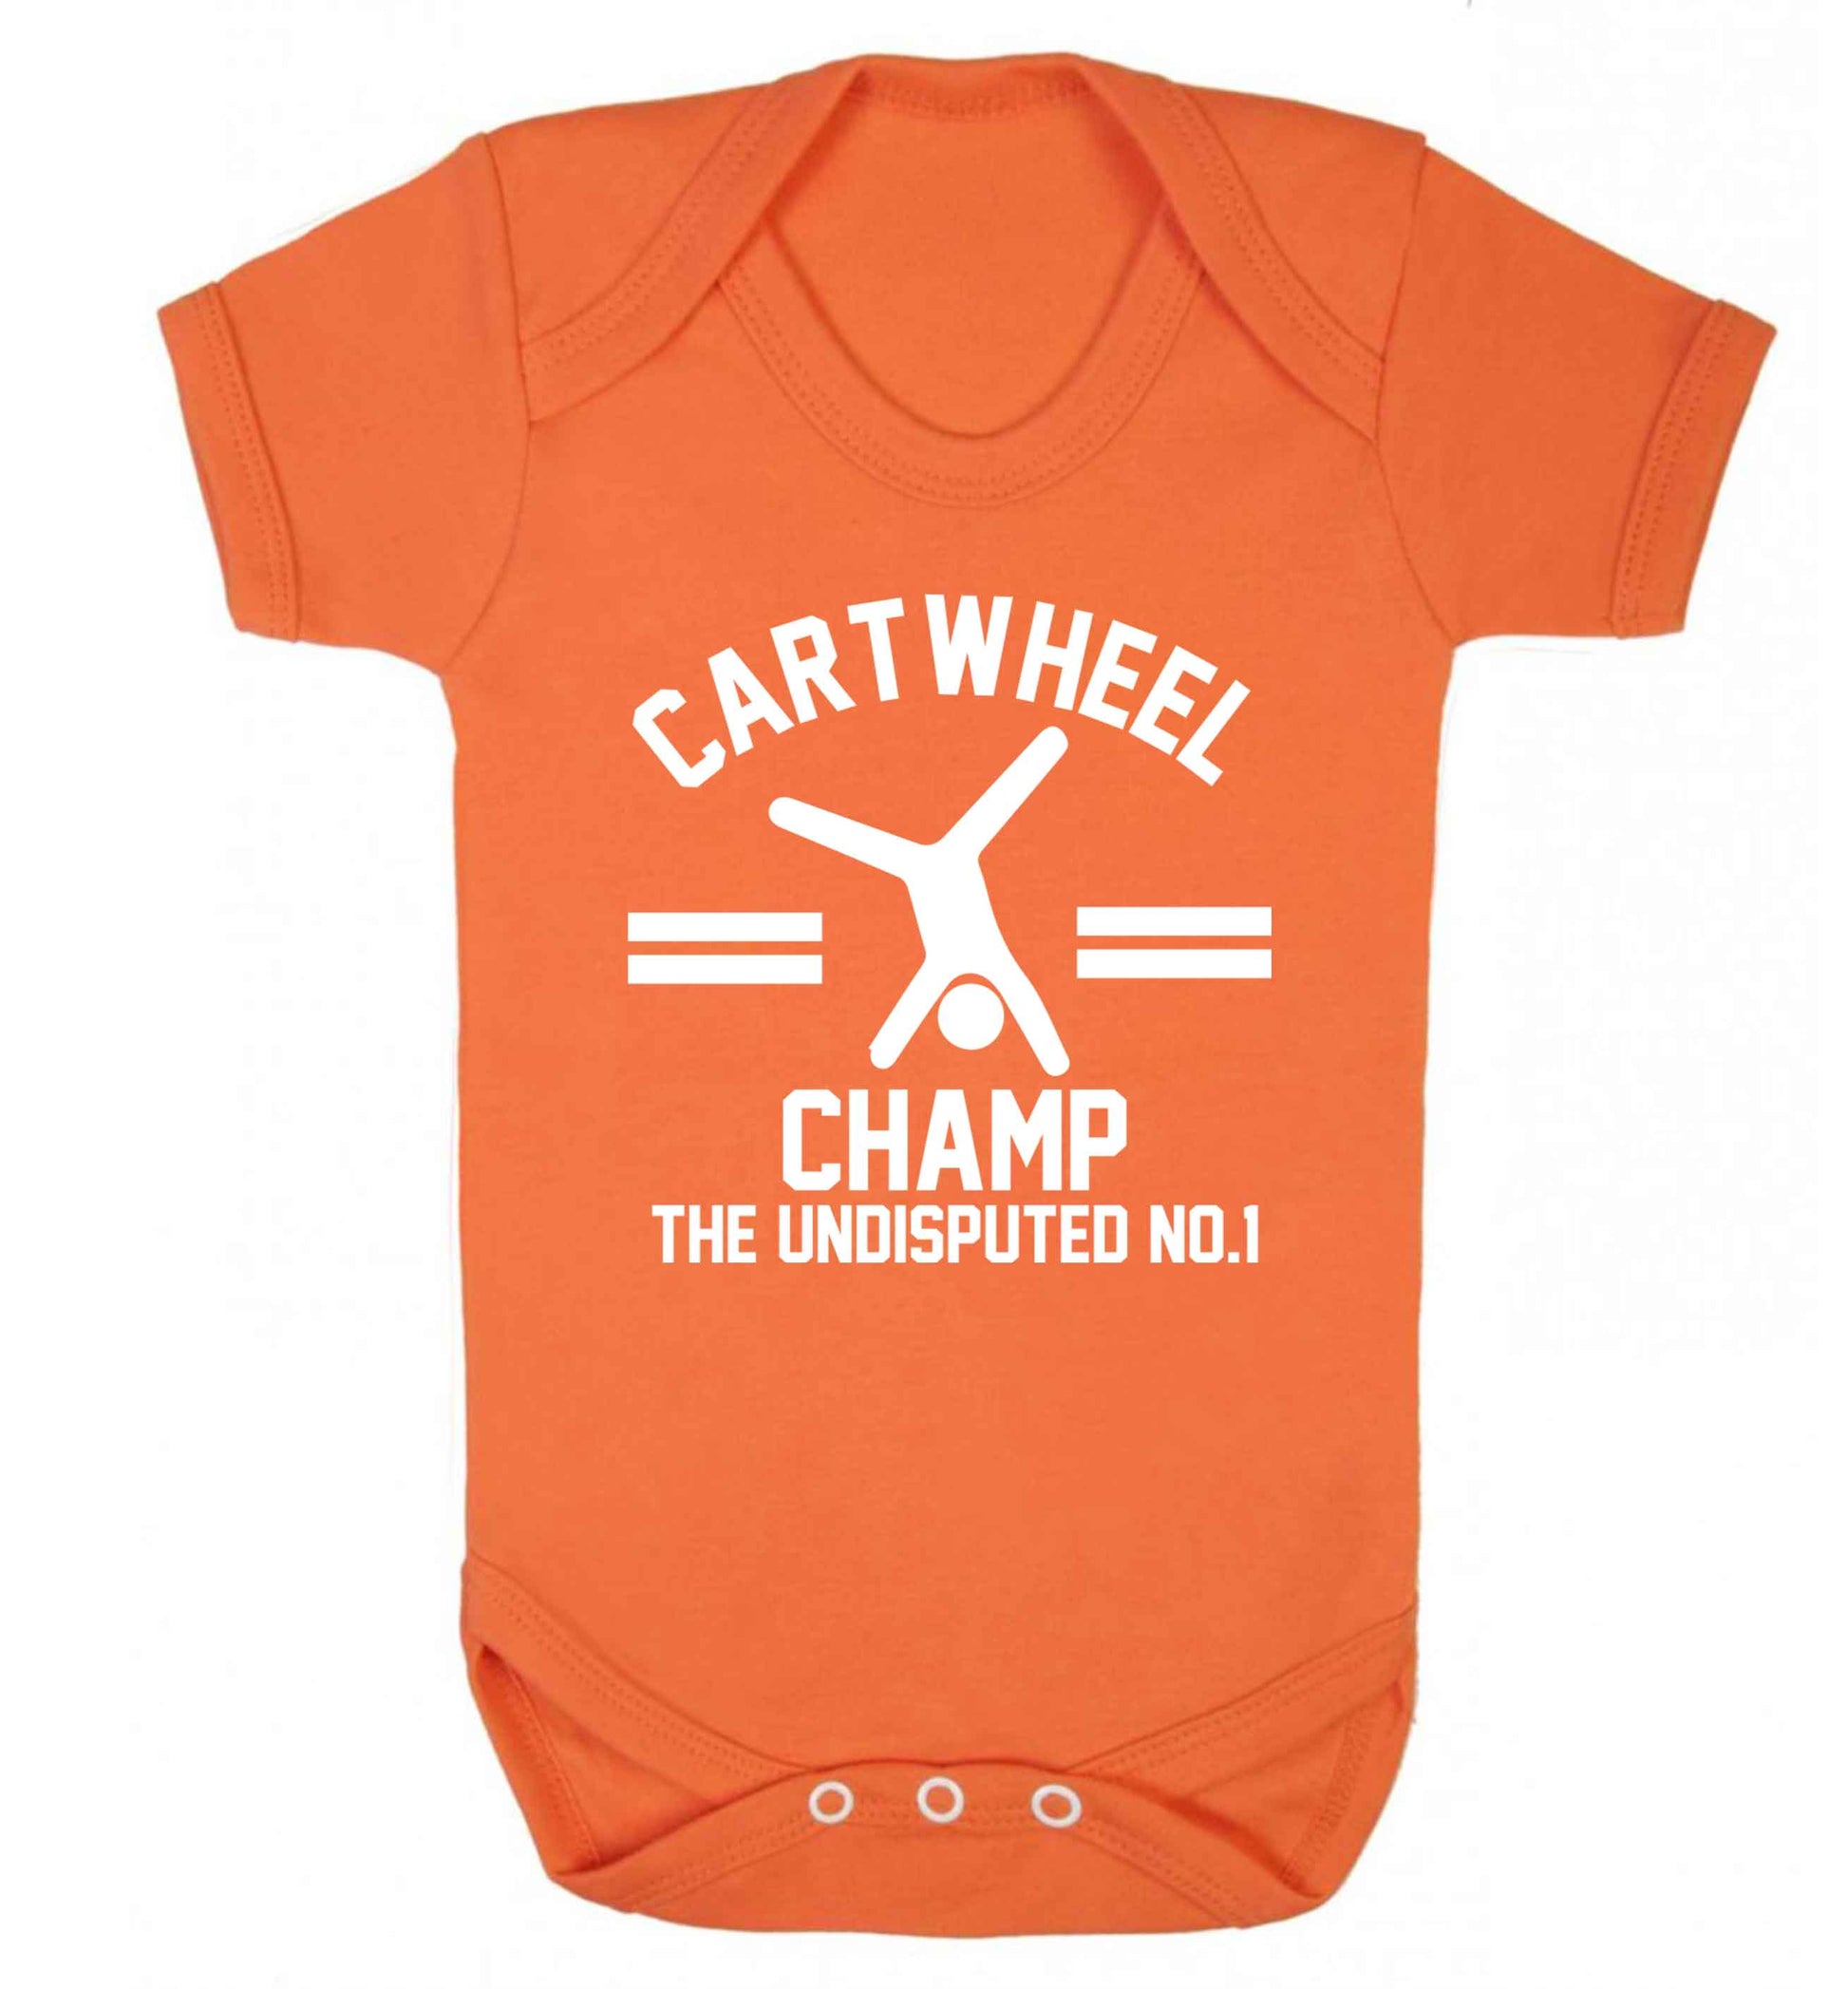 Undisputed cartwheel championship no.1  Baby Vest orange 18-24 months